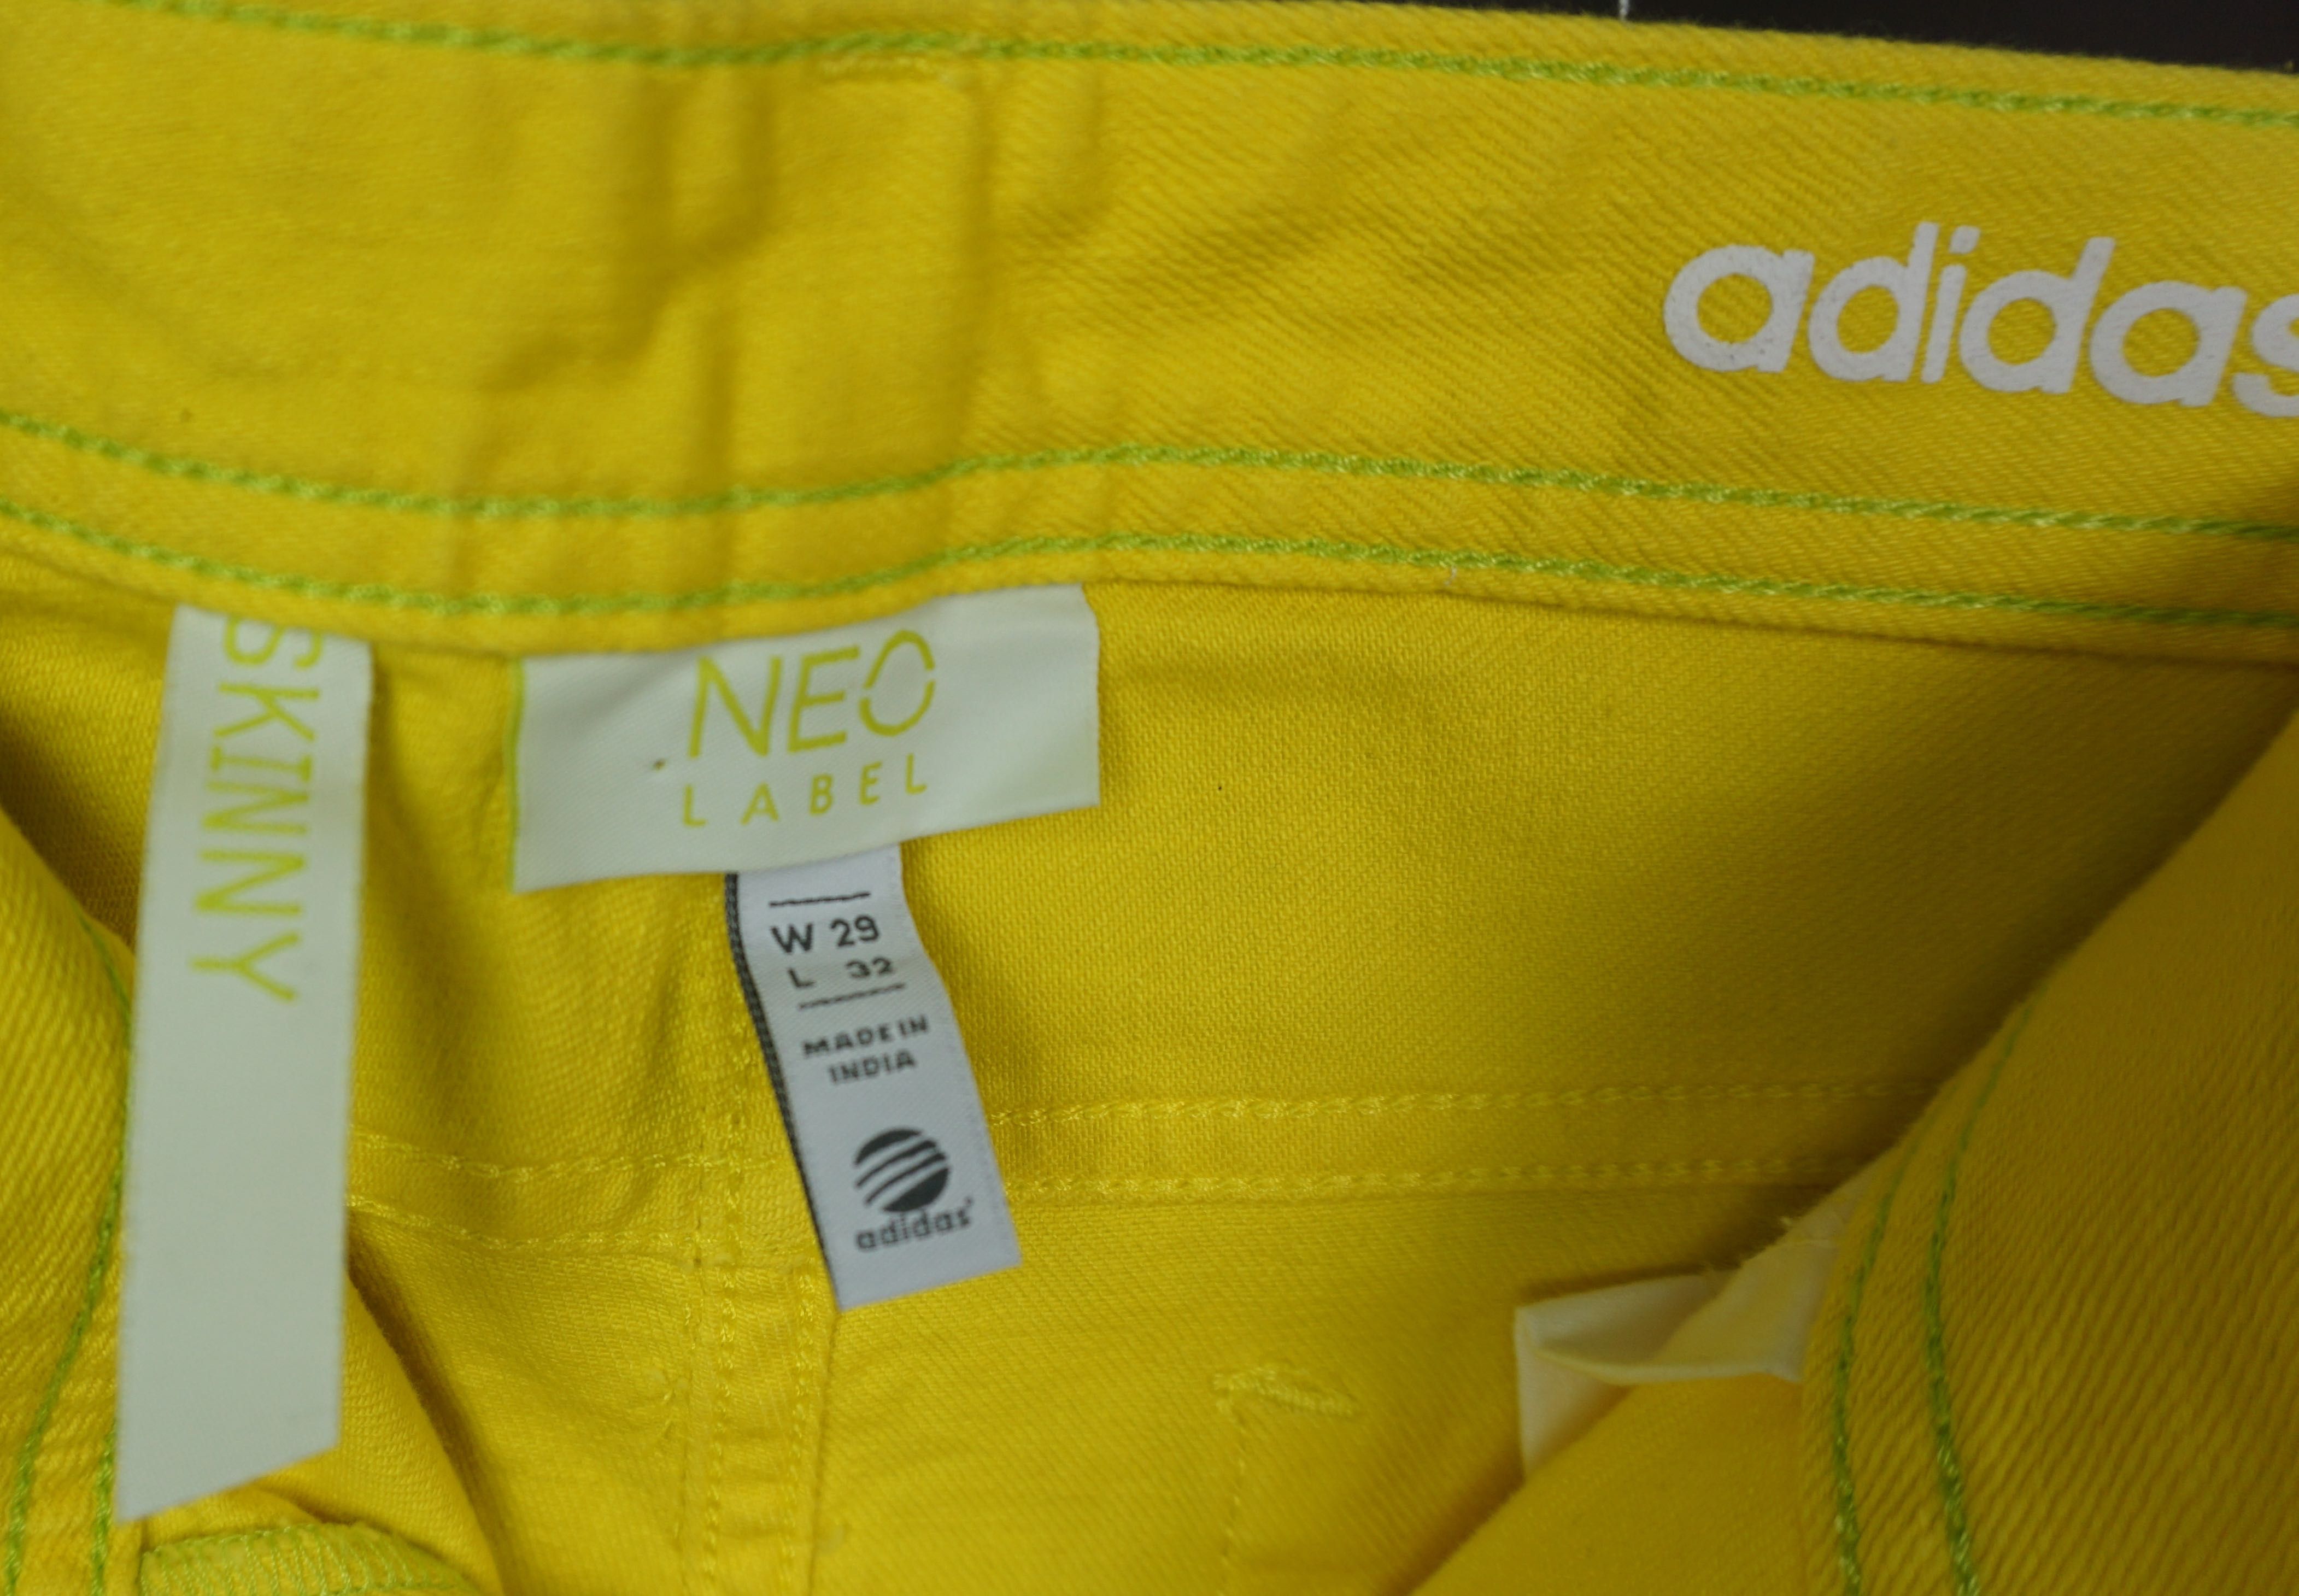 Spodnie Adidas Neo Label  żółte  W29L32